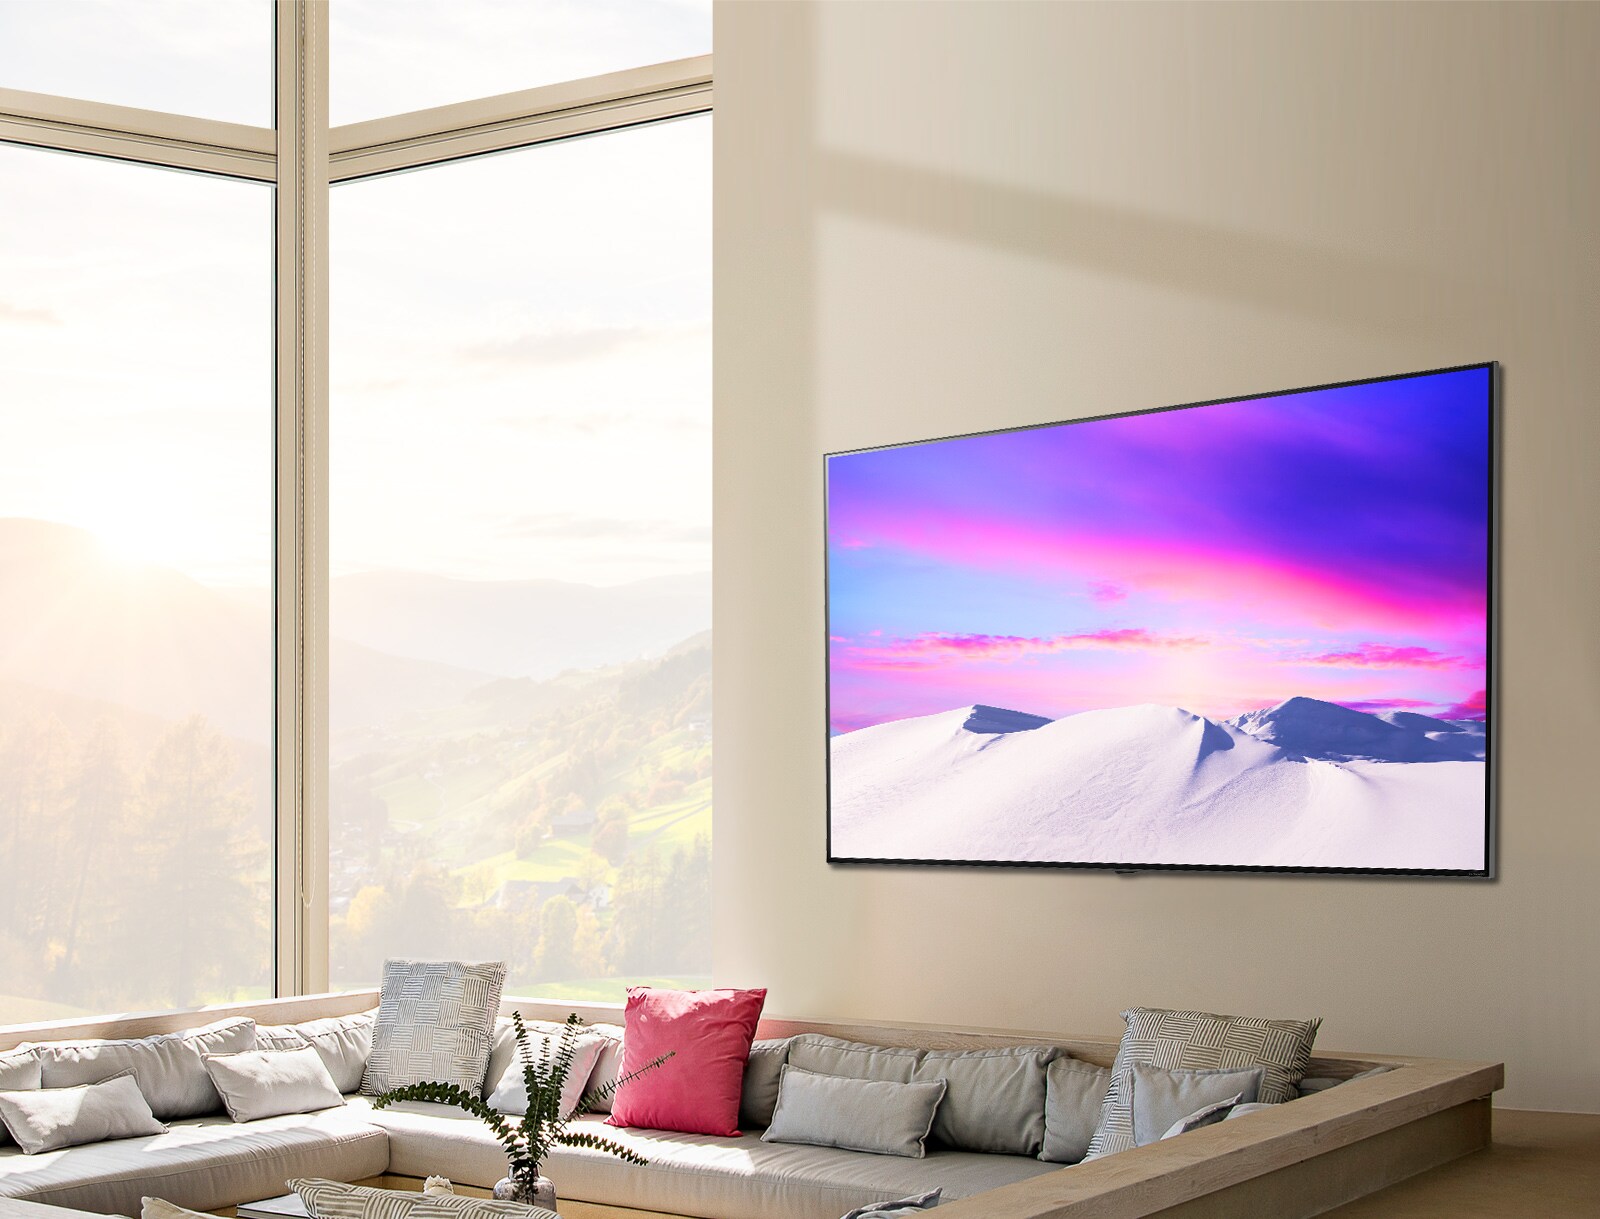 סצנה המציגה טלוויזיית LG NanoCell גדולה ודקה, תלויה בקו אחד עם הקיר.